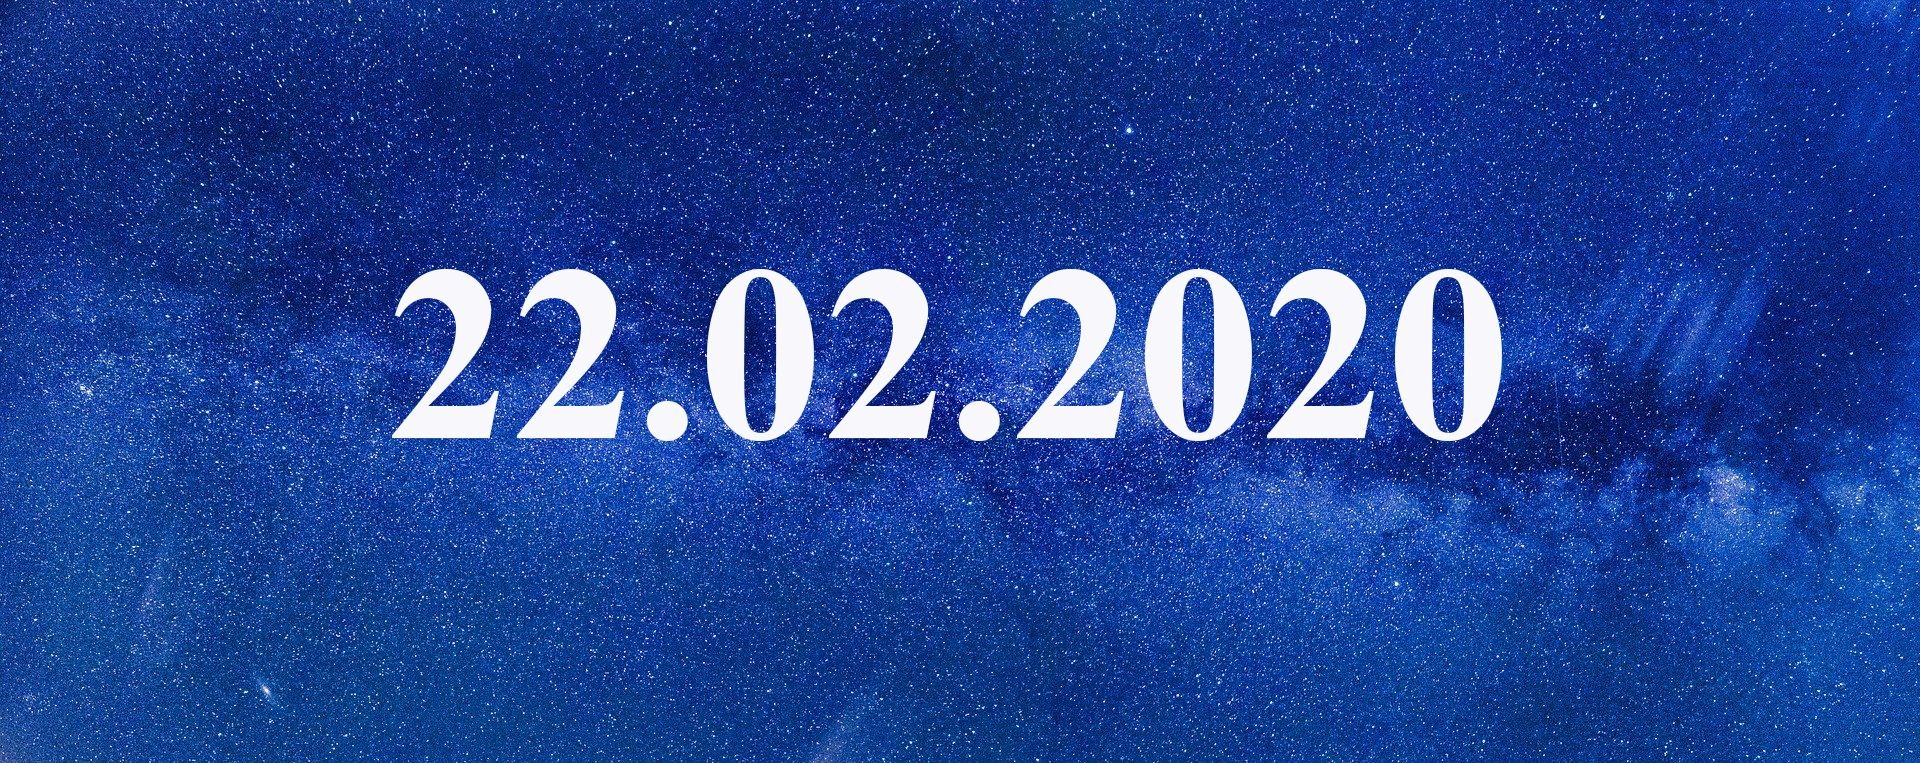 6 июня 2020 день. Зеркальная Дата 22.02.2022. Дата 22.02.2022. Дата красивыми цифрами. 02.02.2022 Мистическая Дата.